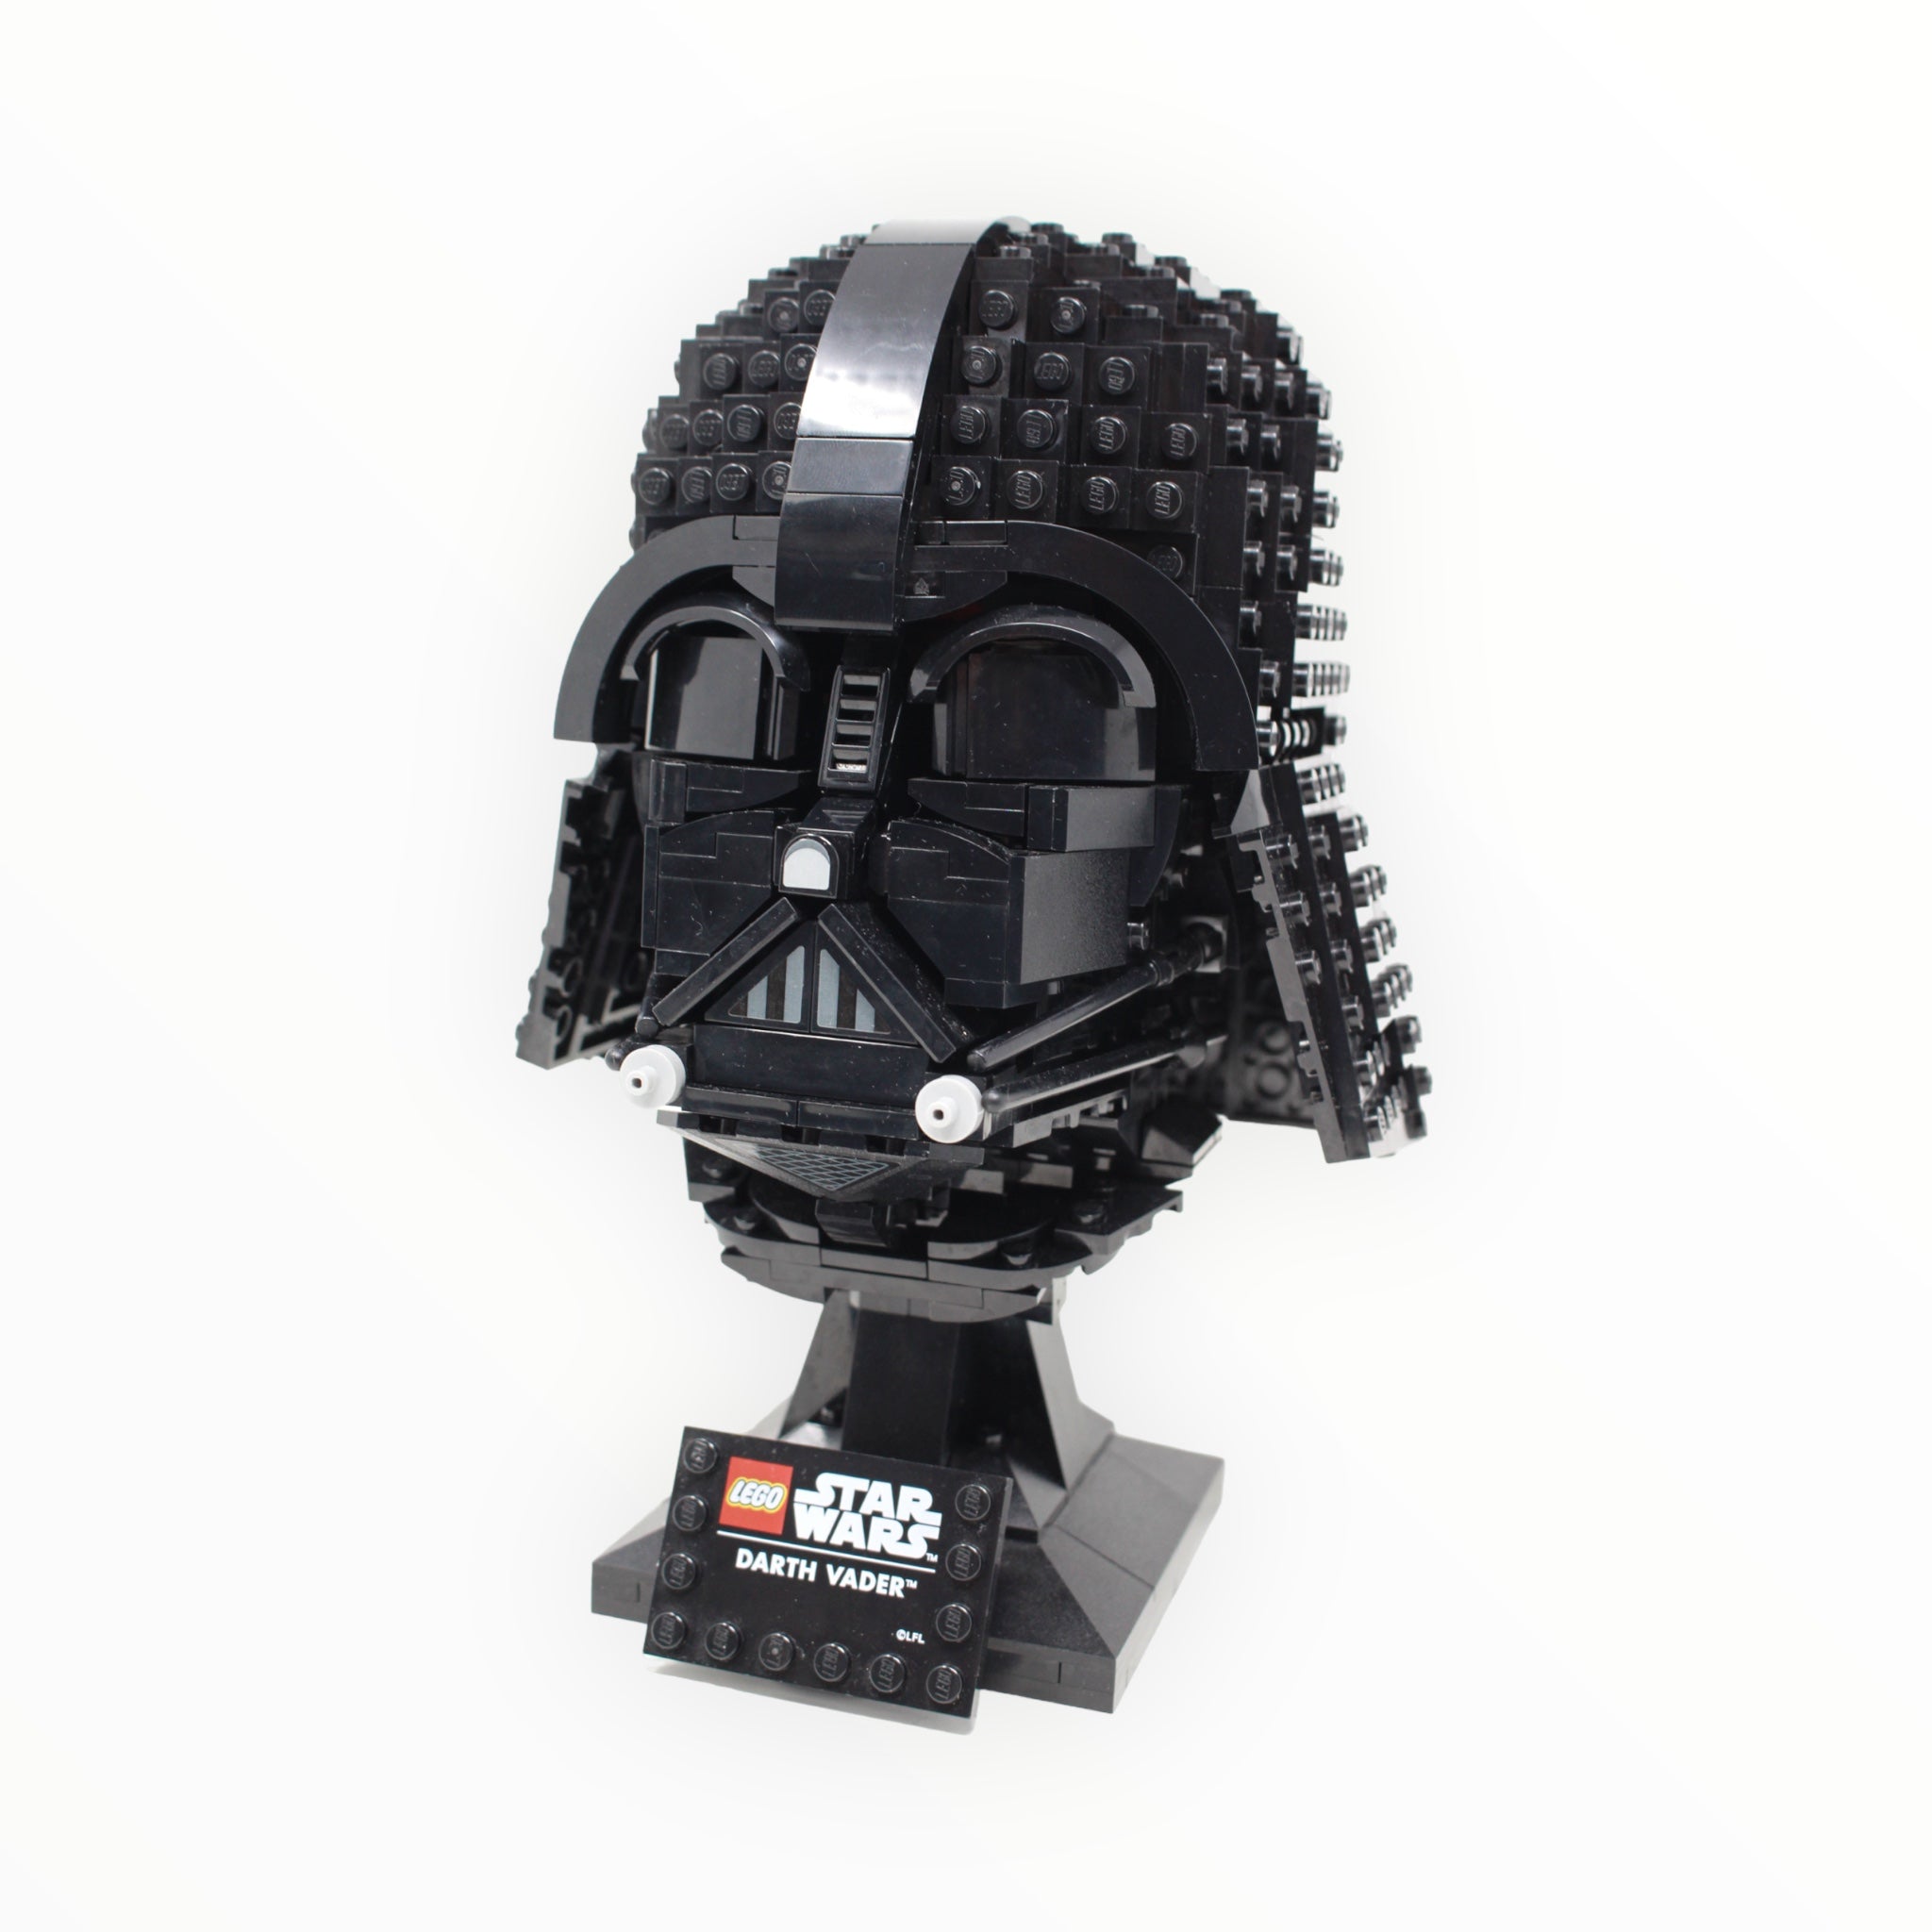 Used Set 75304 Star Wars Darth Vader Helmet